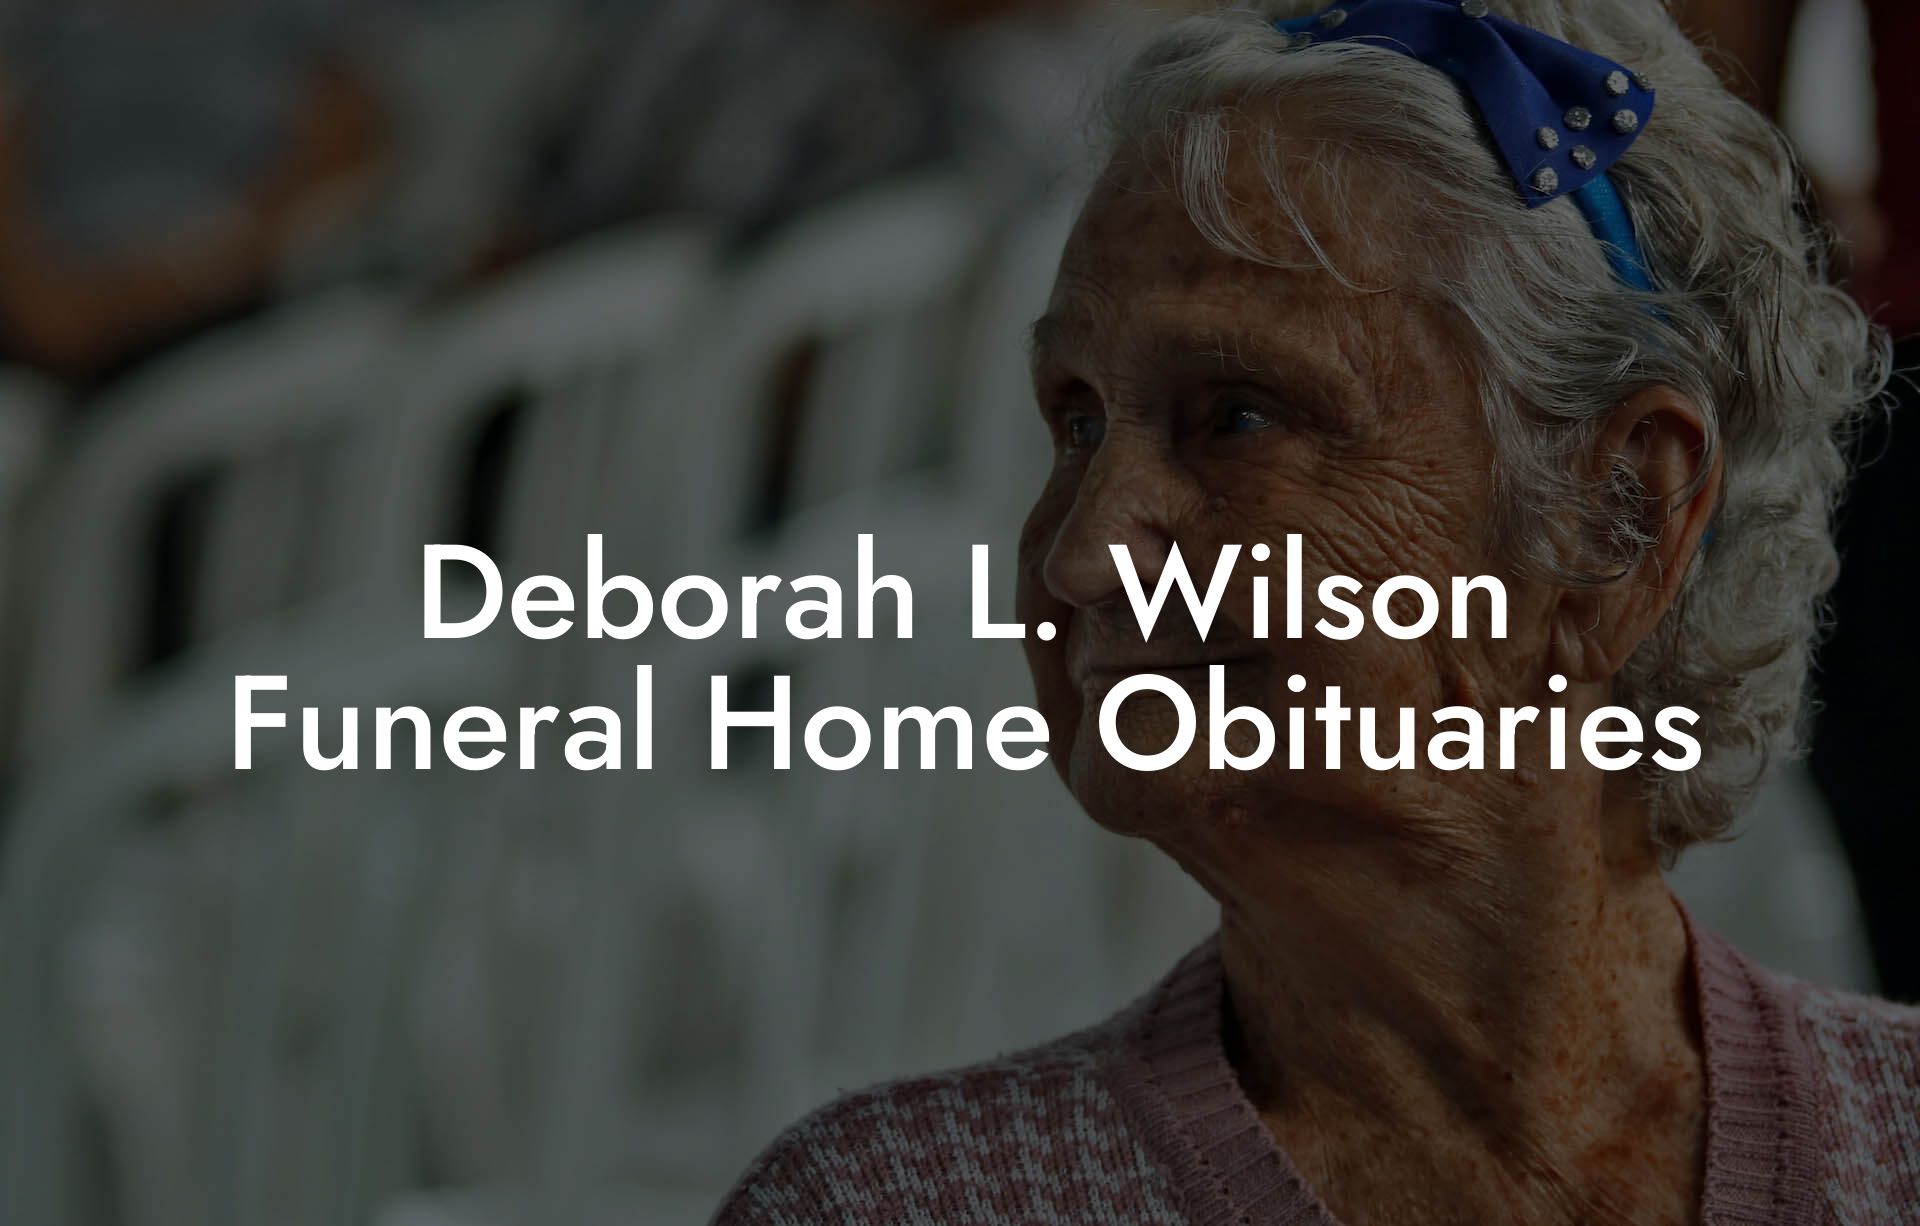 Deborah L. Wilson Funeral Home Obituaries